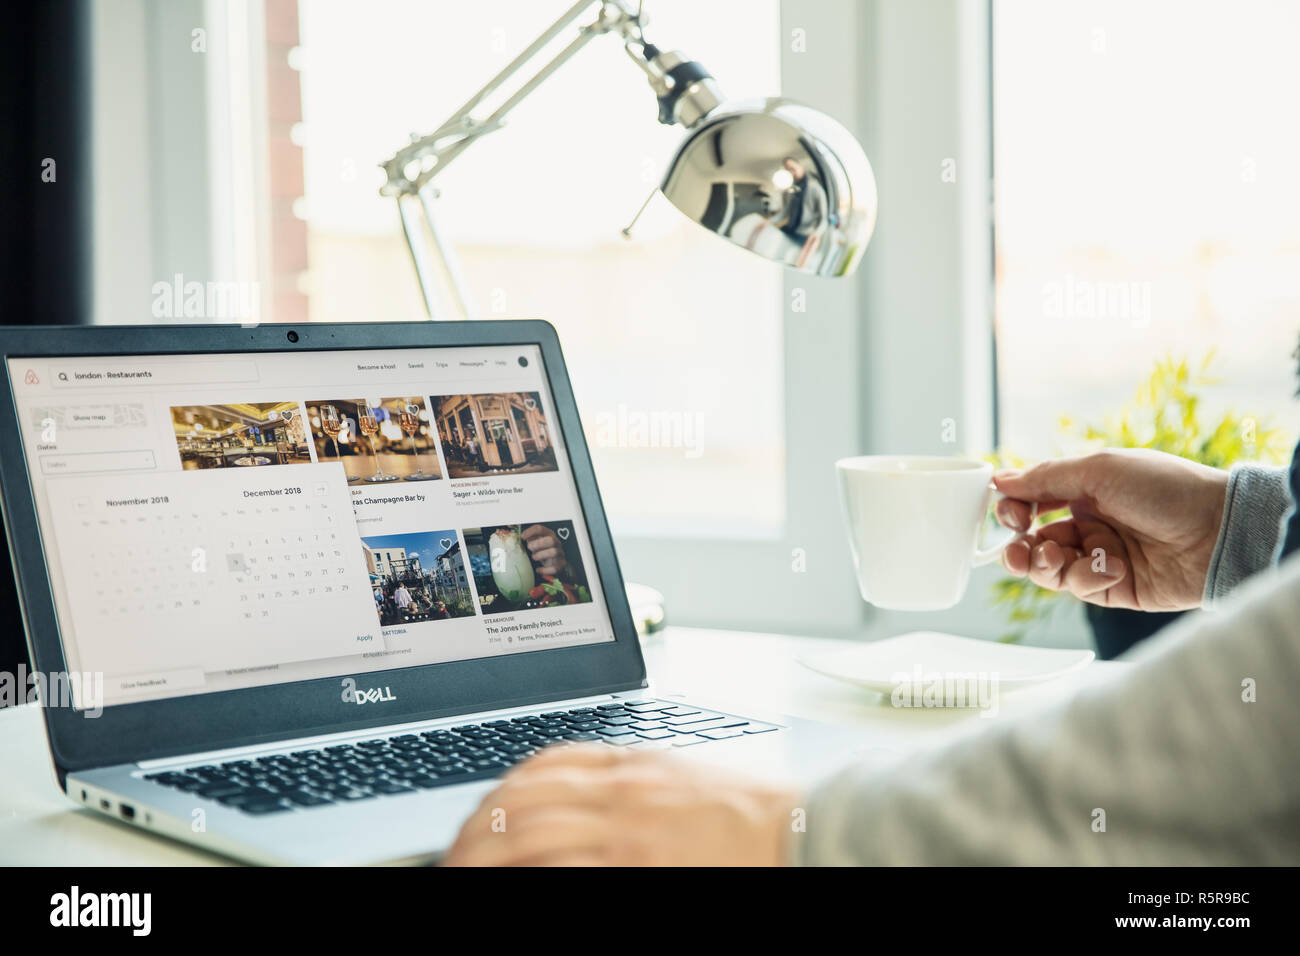 WROCLAW, Polen - 29. NOVEMBER 2018: Moderne Laptop auf dem Schreibtisch im Büro mit airbnb Webseite auf dem Bildschirm. A‌i‌r‌b‌n‌b‌, ‌ ‌I‌n‌c‌. ‌ ist ein online m Stockfoto